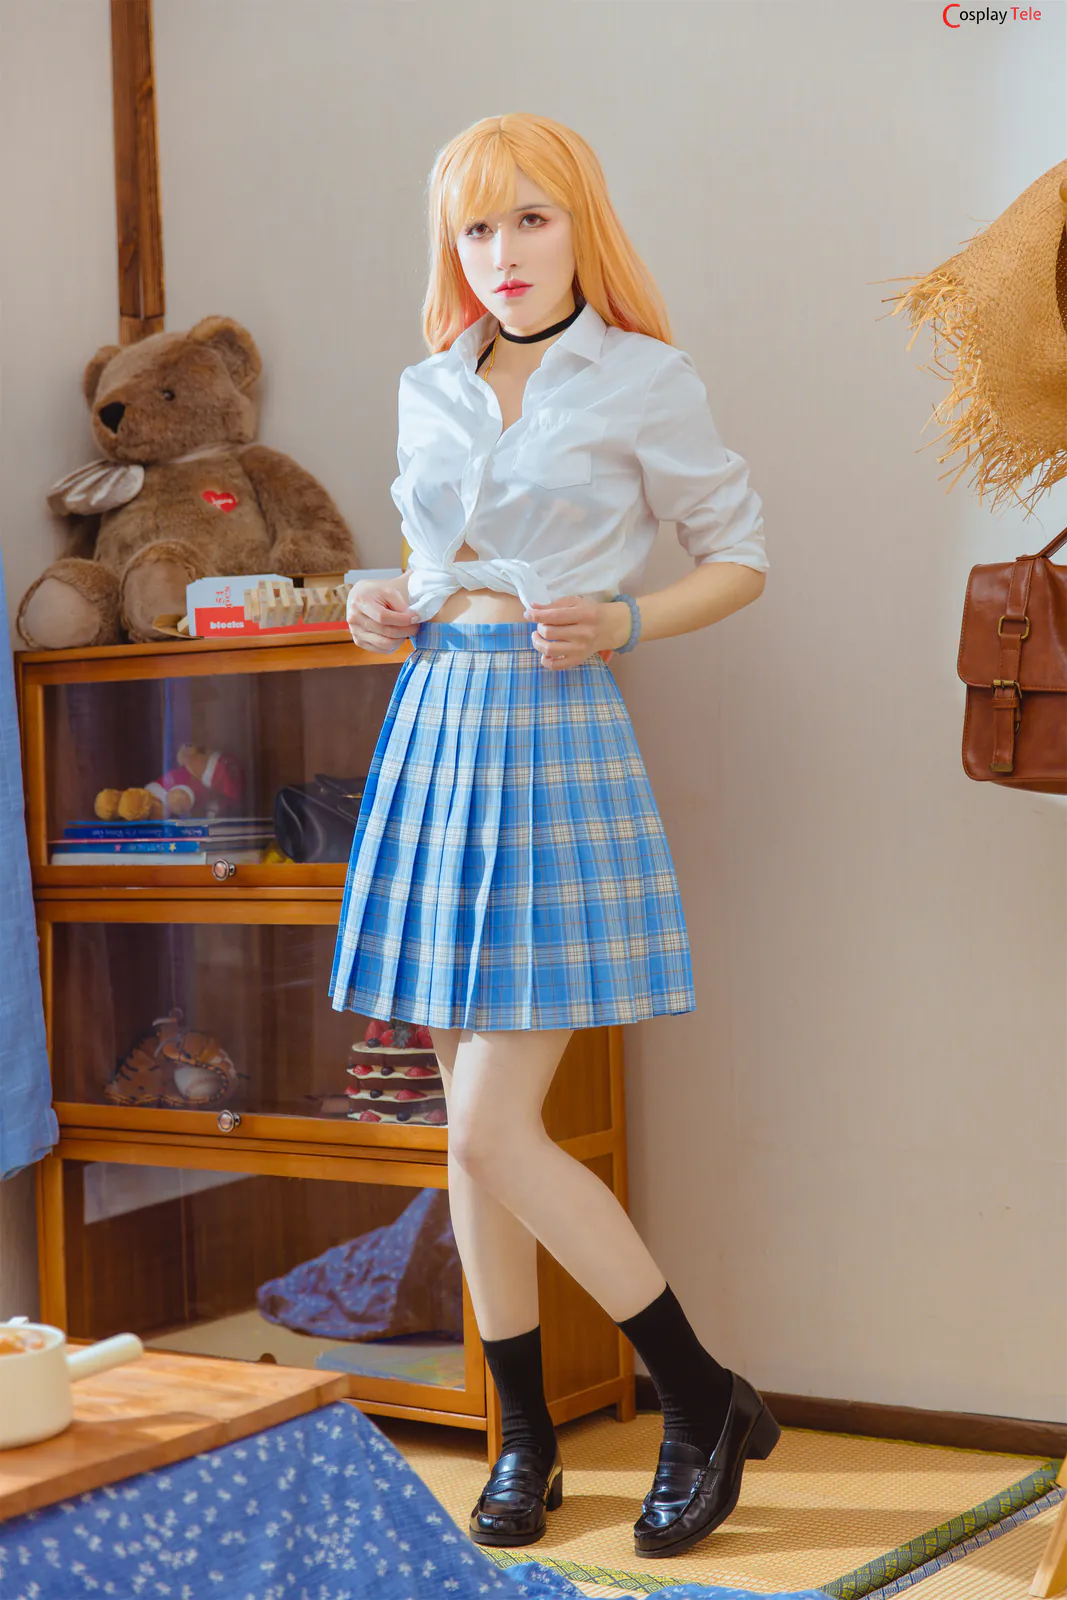 鹿八岁baby (baby-LuLu) cosplay Marin Kitagawa – Sono Bisque Doll “43 photos” 412